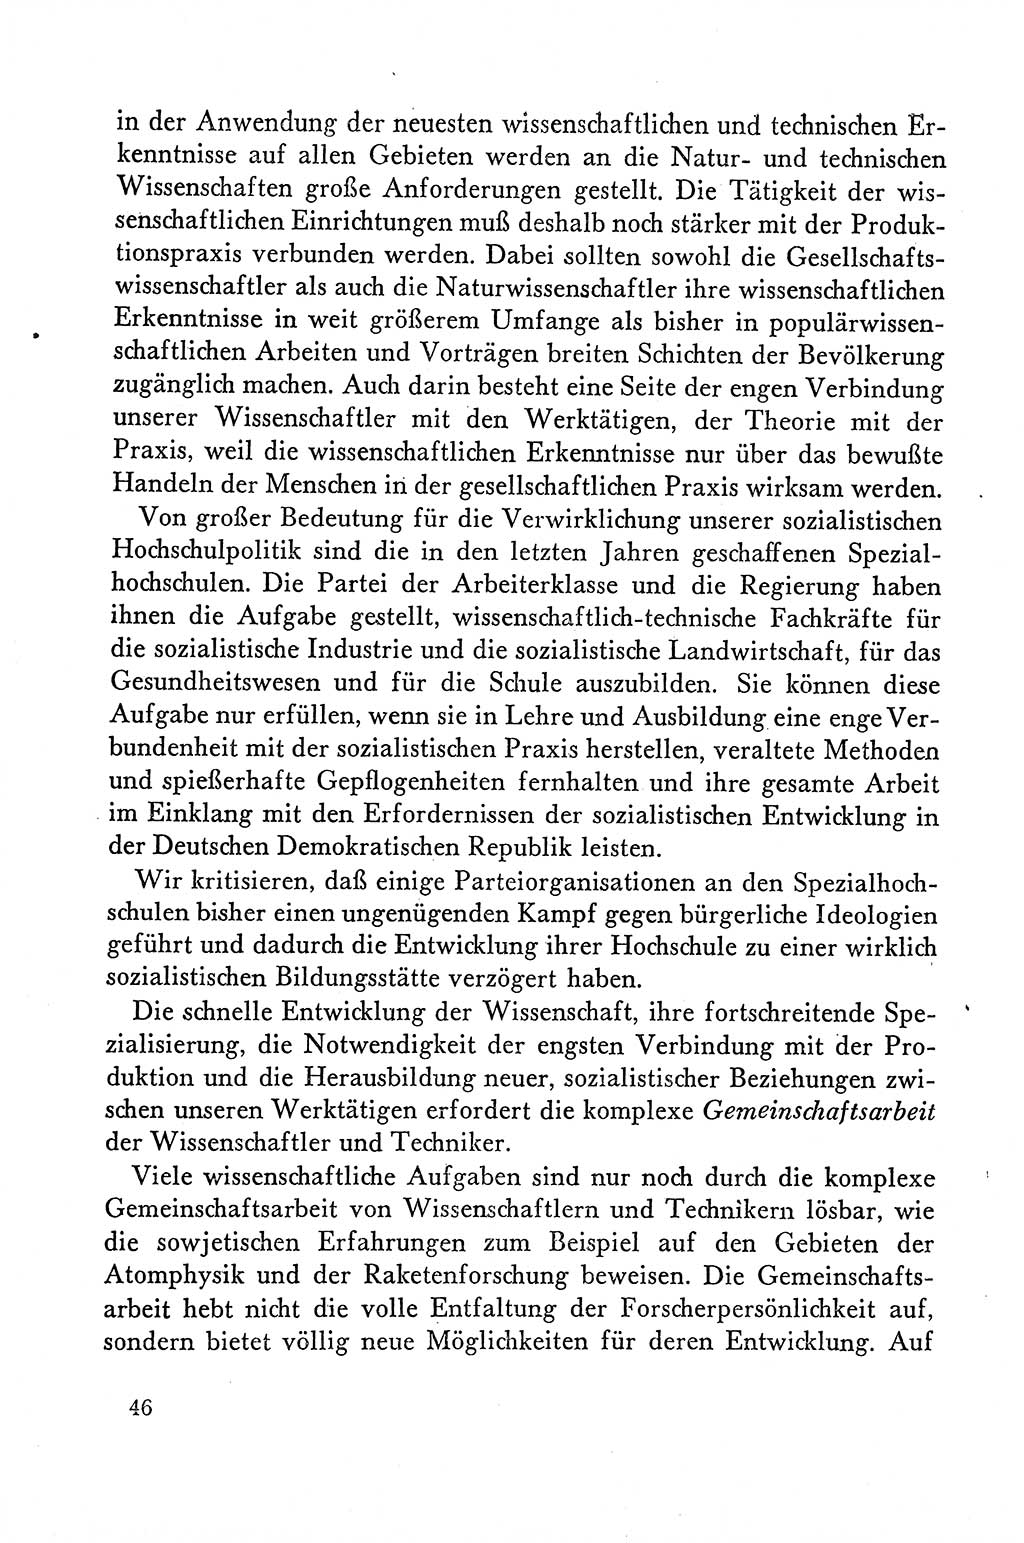 Dokumente der Sozialistischen Einheitspartei Deutschlands (SED) [Deutsche Demokratische Republik (DDR)] 1958-1959, Seite 46 (Dok. SED DDR 1958-1959, S. 46)